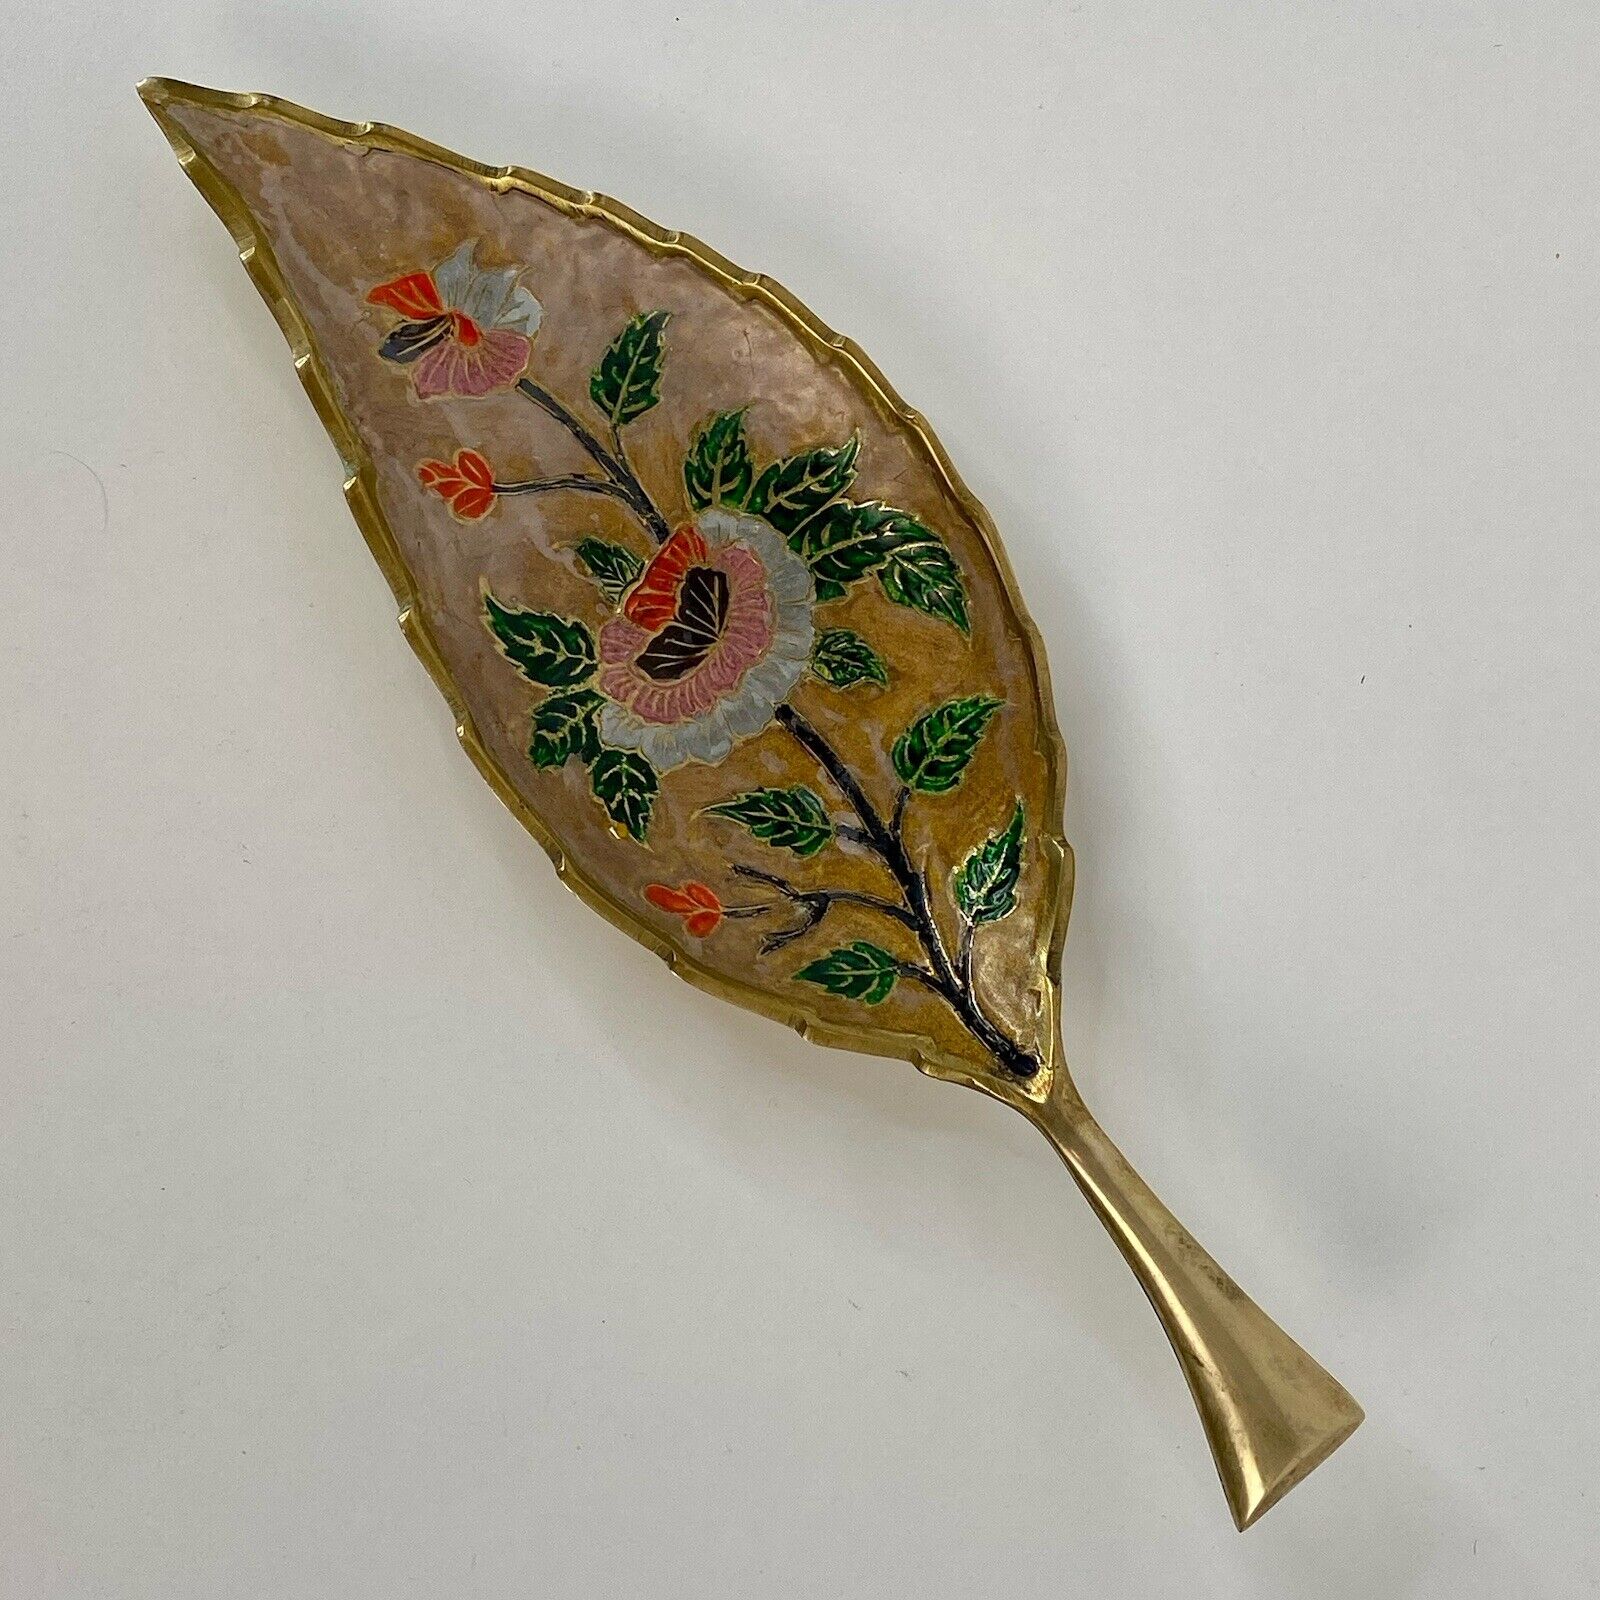 Vintage Brass Leaf Trinket Dish Etched Flower Floral Ash or Incense Tray 12x4”